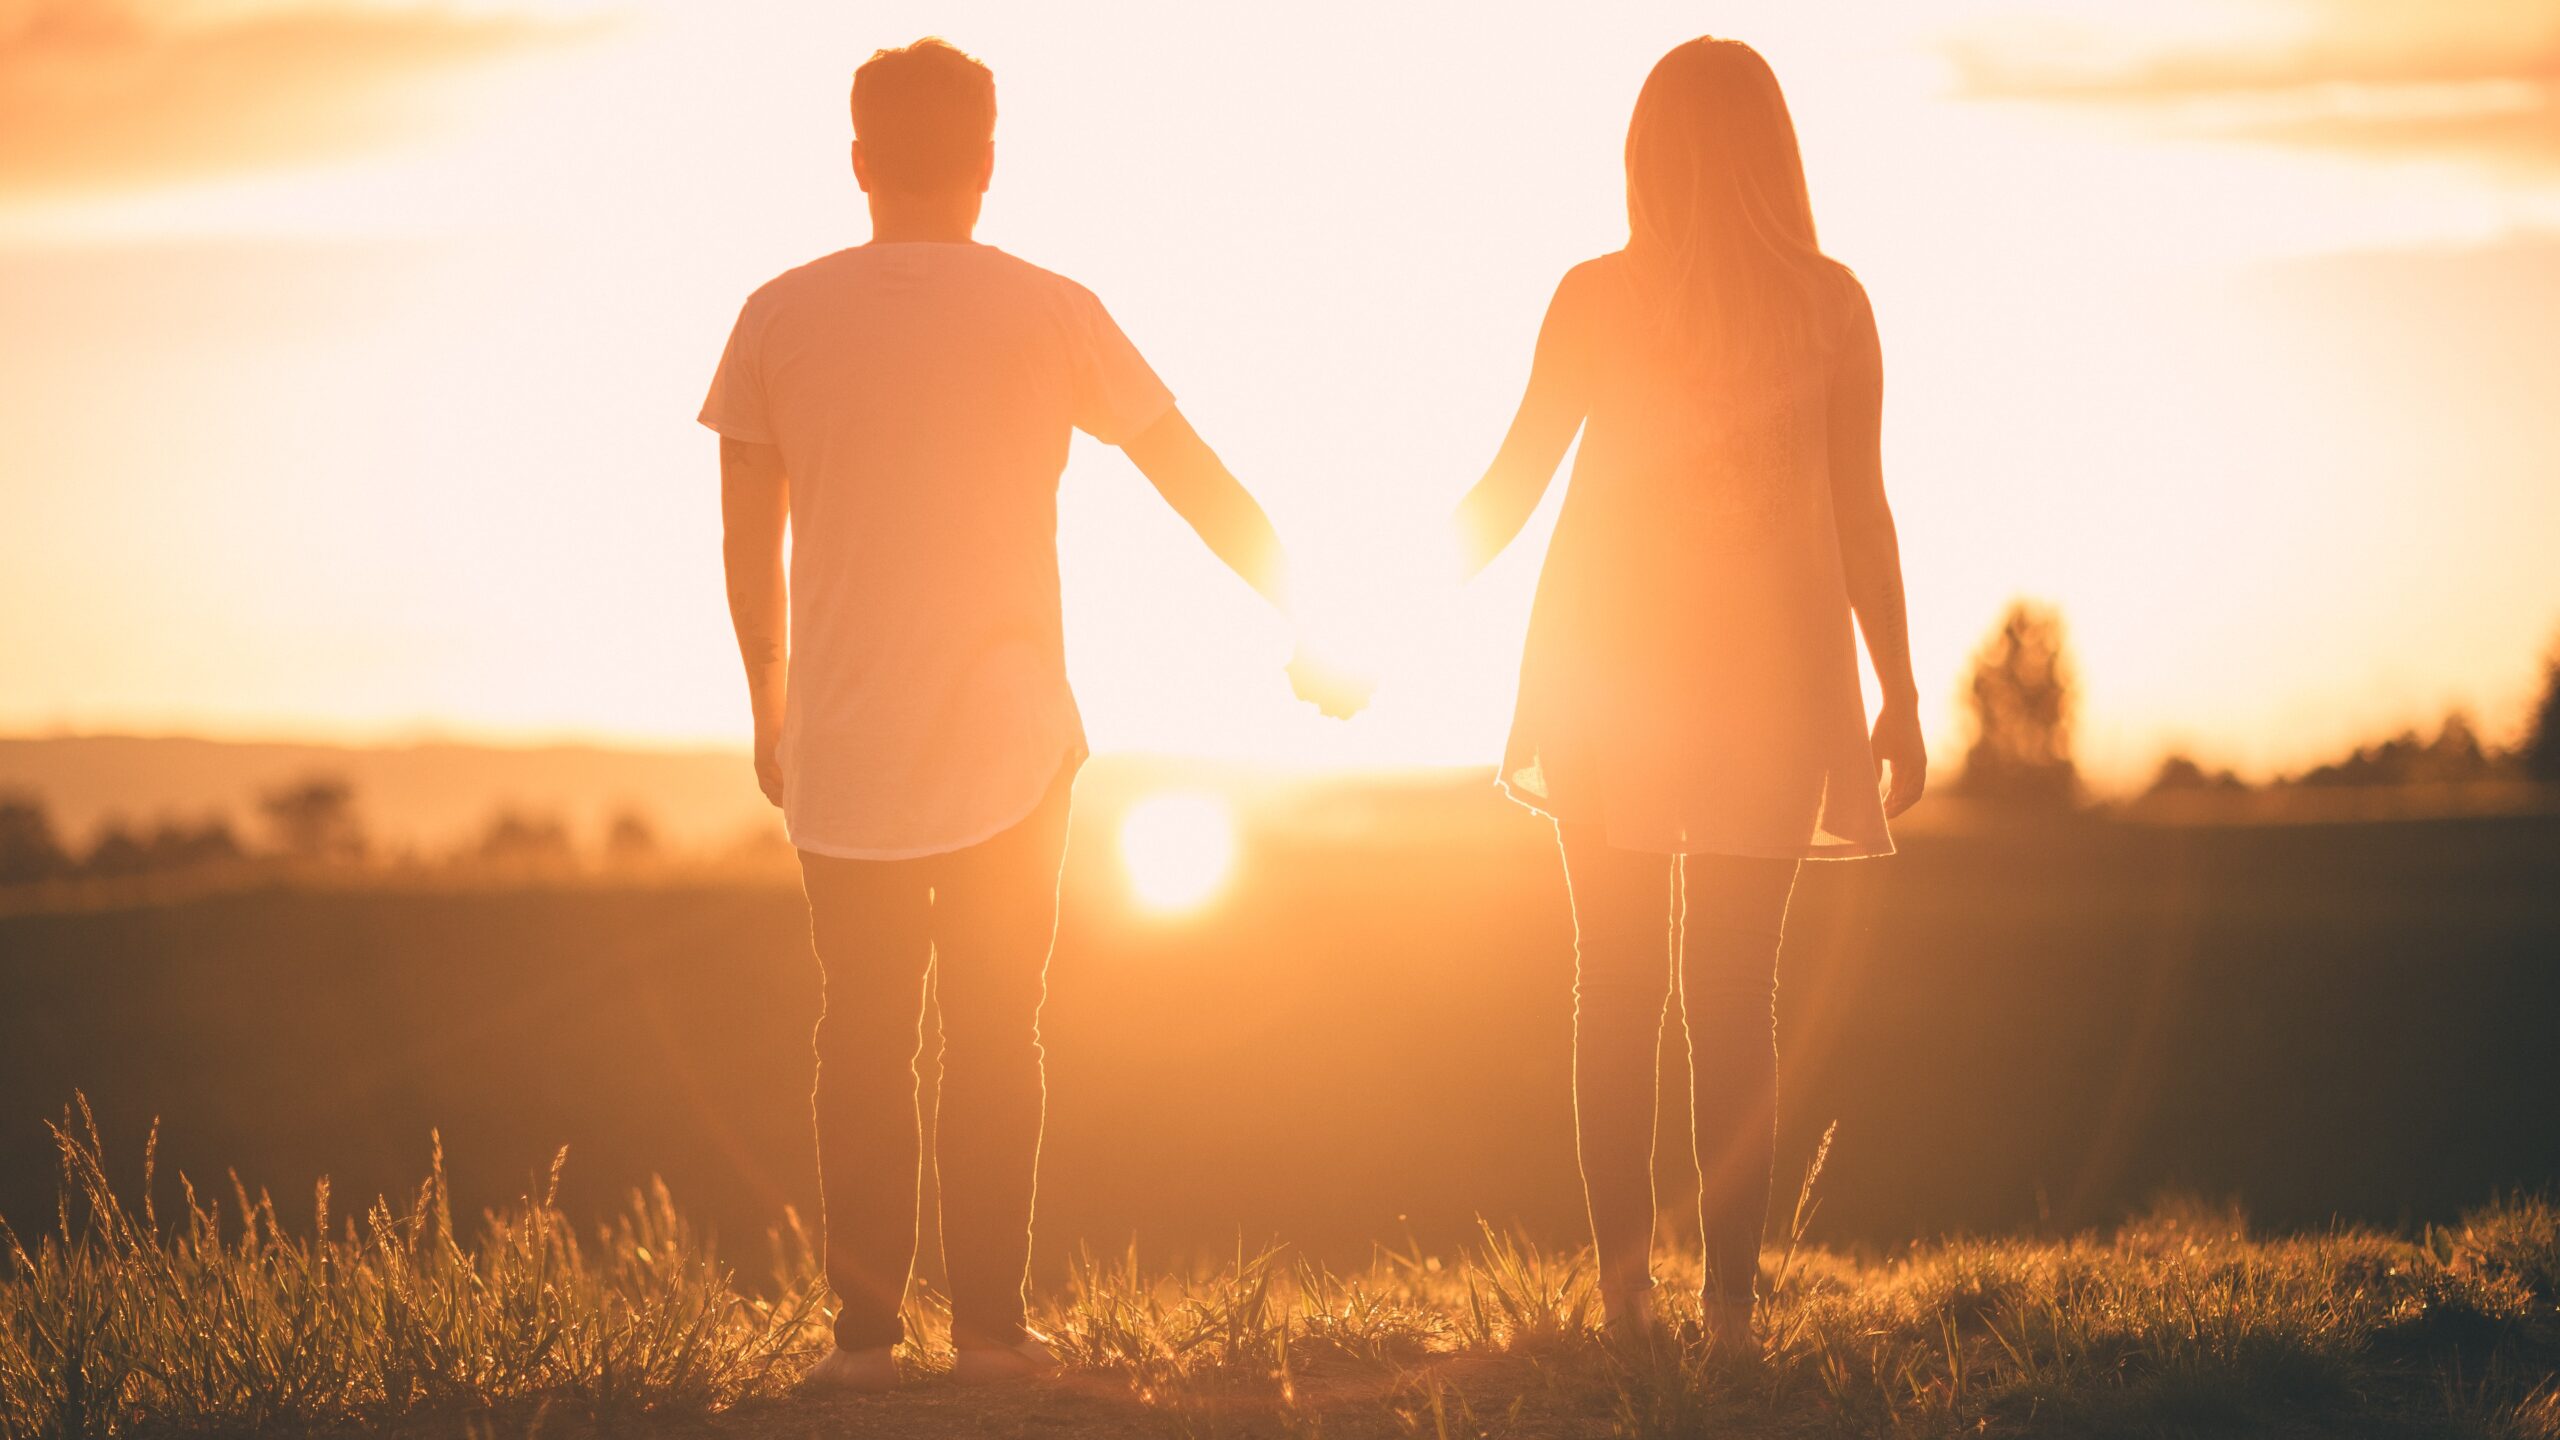 Lo que mi pareja me refleja: ¿Me relaciono desde el amor o mis carencias?